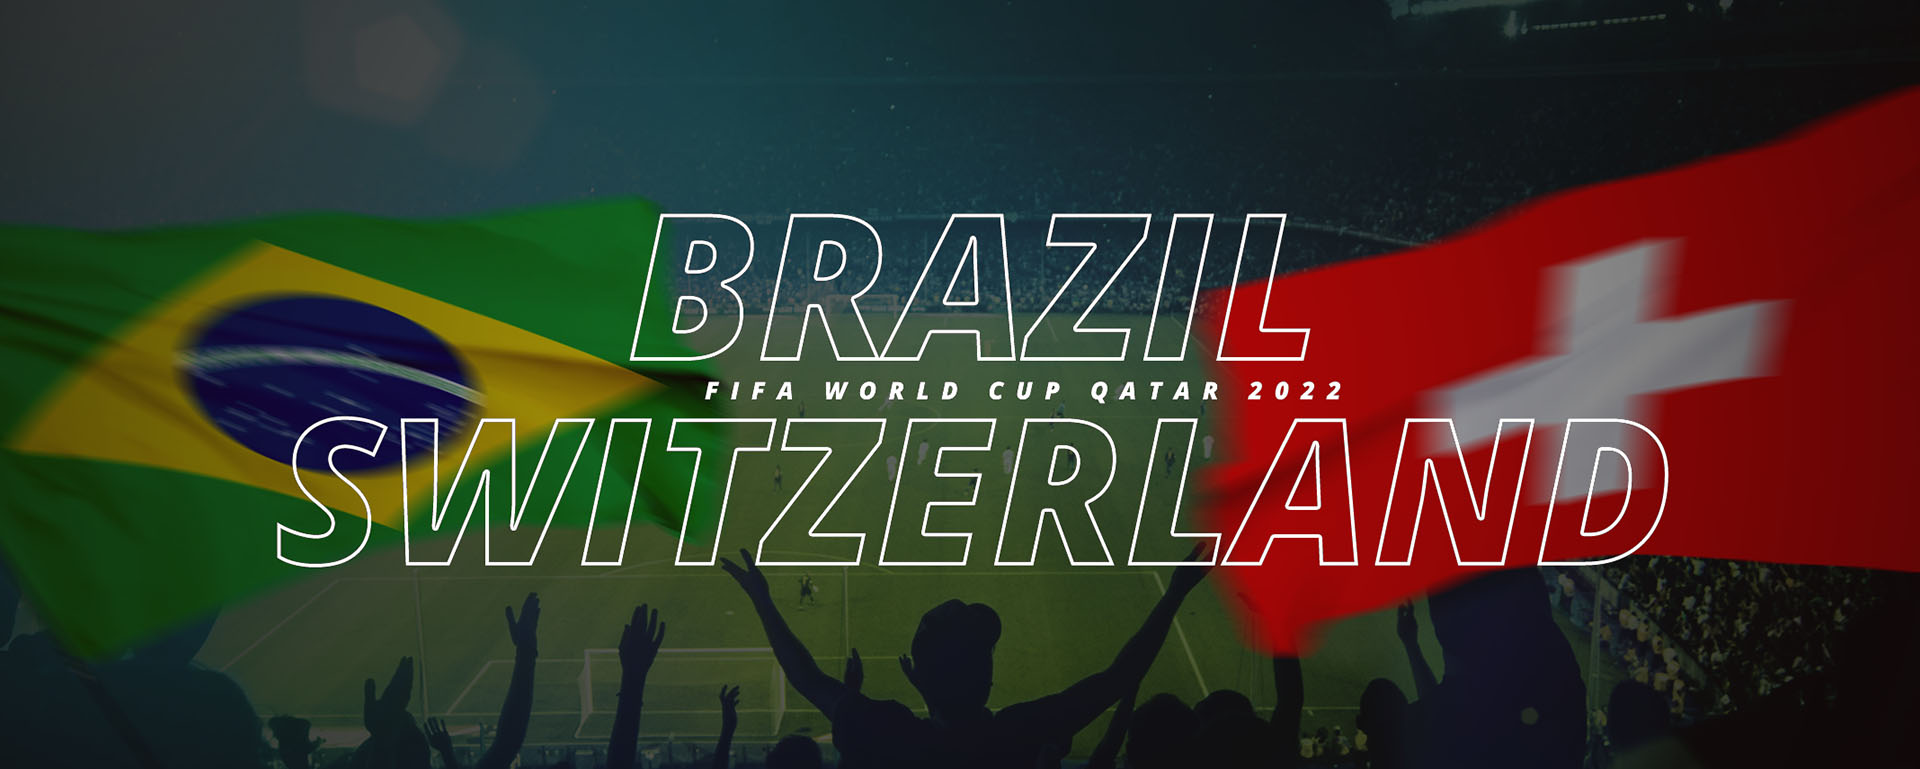 BRAZIL VS SWITZERLAND | FIFA WORLD CUP QATAR 2022